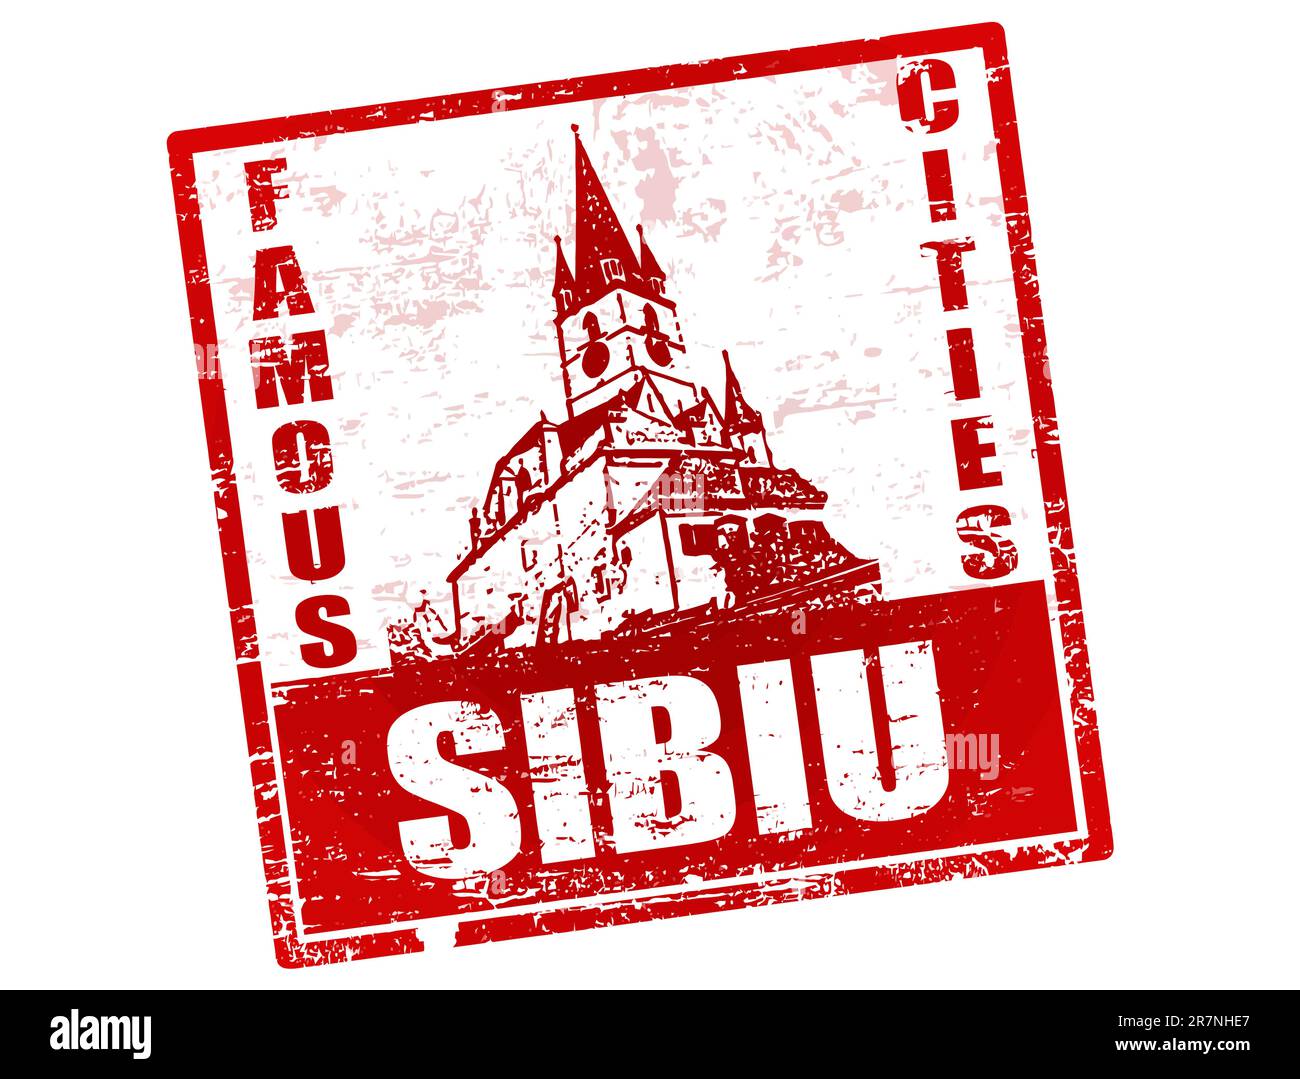 Timbre en caoutchouc grunge avec la construction de la tour gothique église luthérienne forme et le texte Sibiu écrit à l'intérieur du timbre Illustration de Vecteur